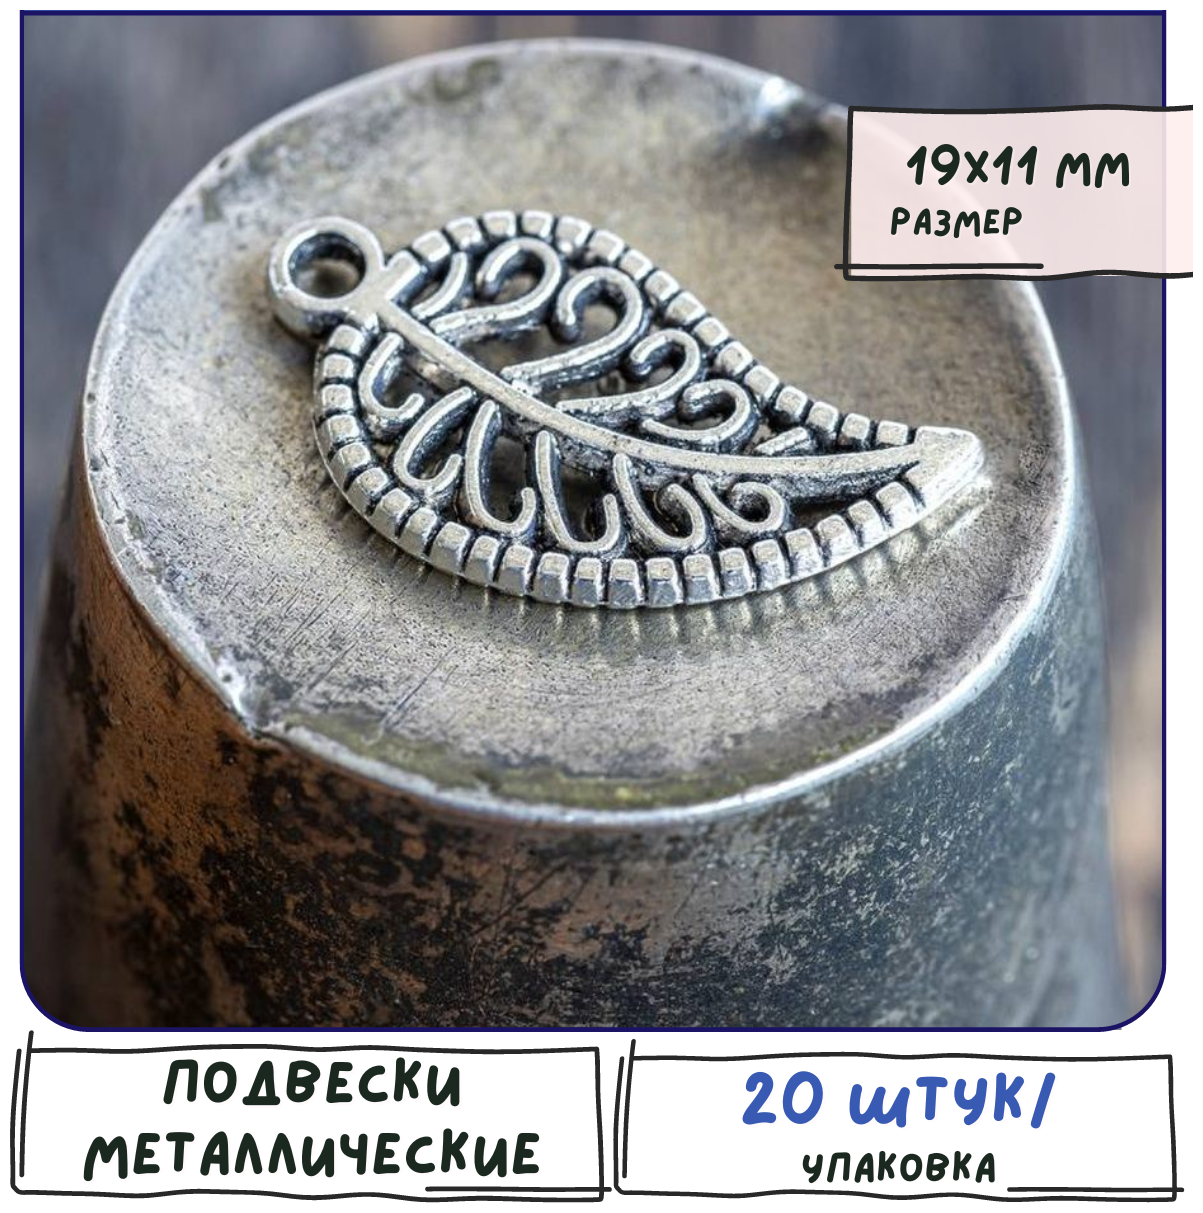 Кулон Подвеска металлическая 20 шт. для рукоделия / браслета / сережек, цвет античное серебро, 19х11х2 мм